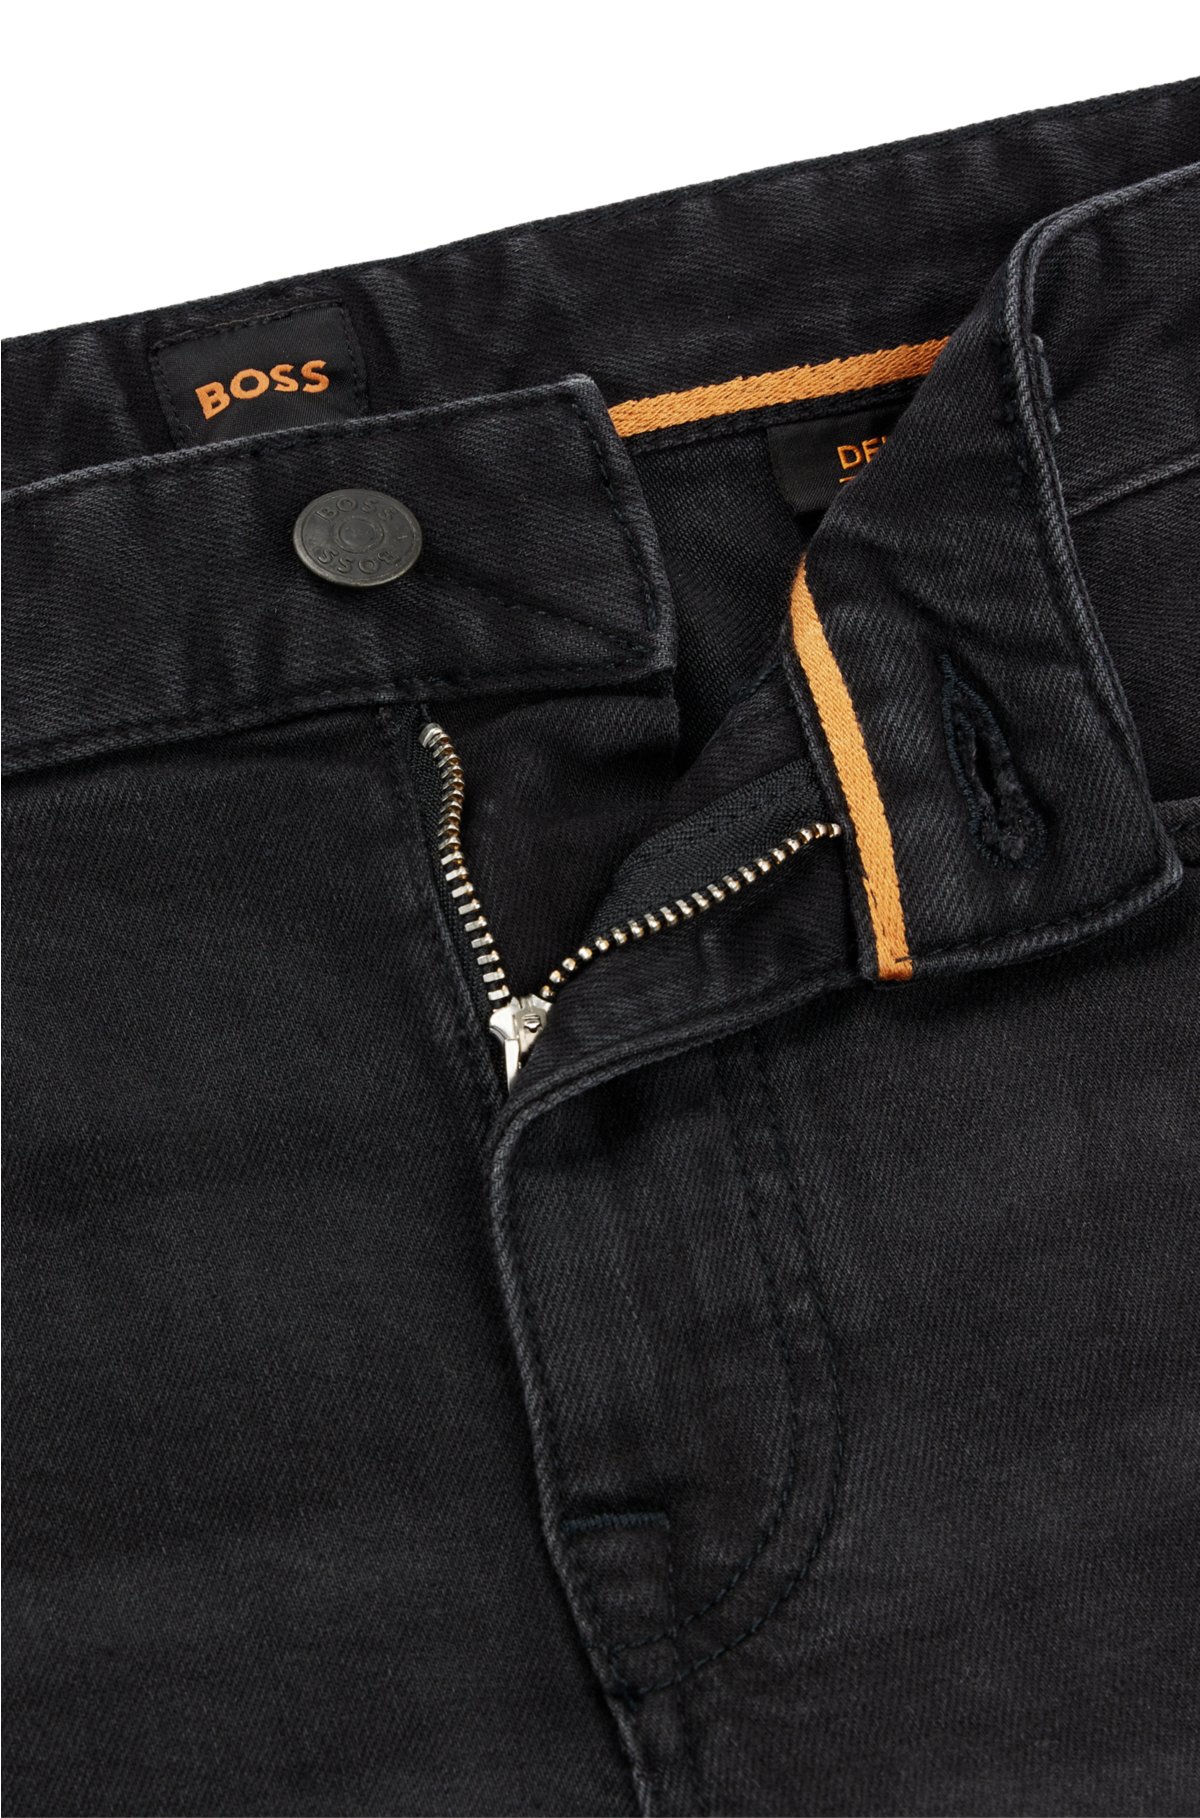 protektor spole Sløset BOSS - Slim-fit jeans in black comfort-stretch denim